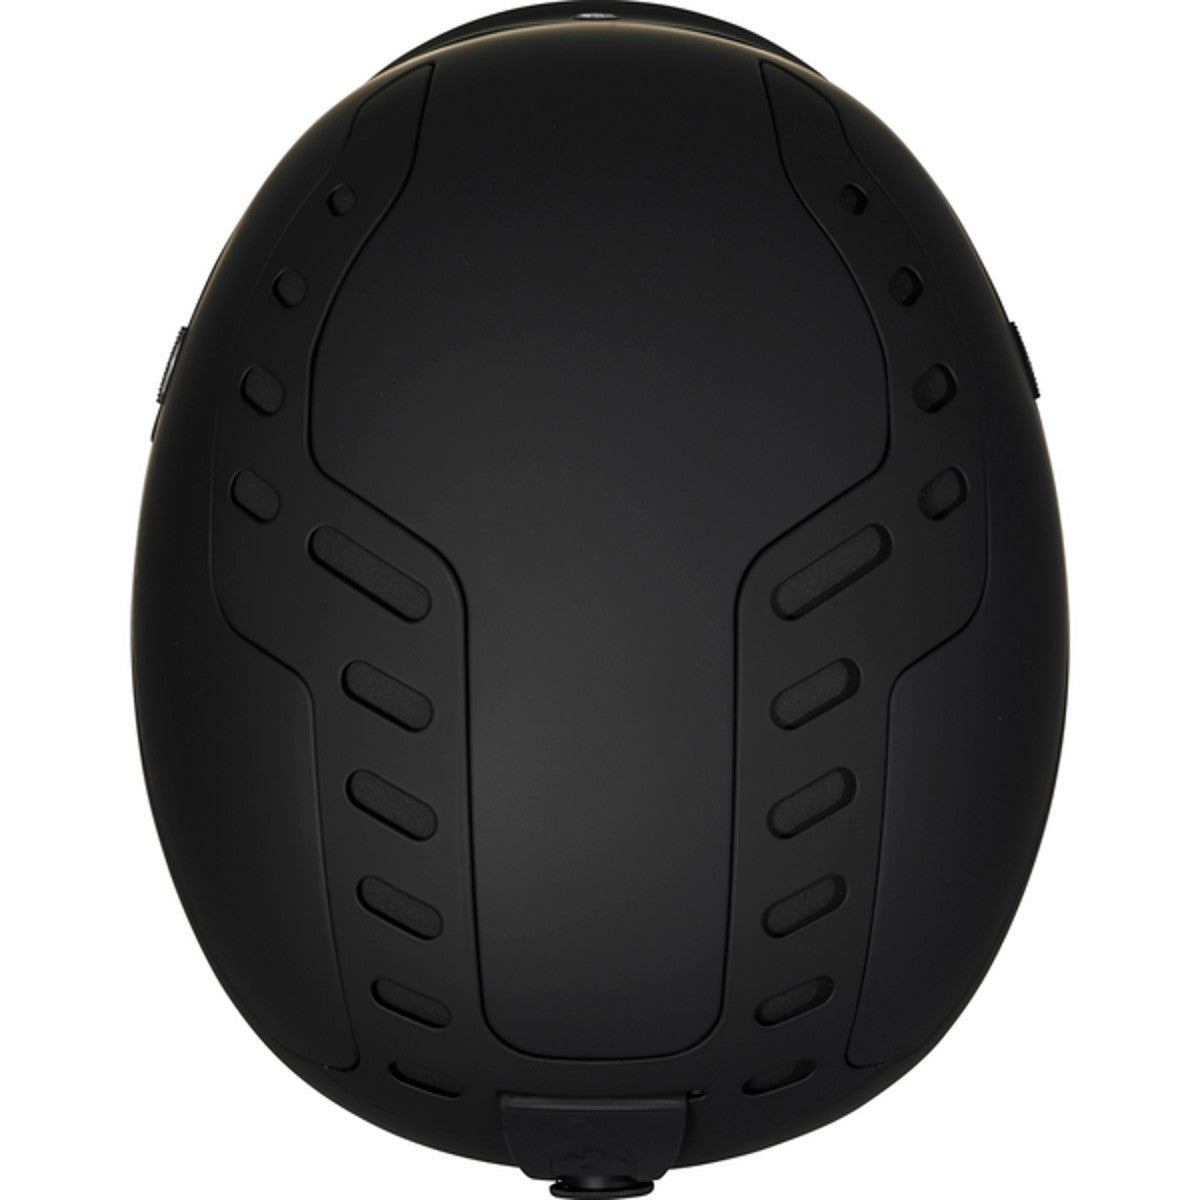 Sweet Protection - Men's Switcher Mips Helmet - Dirt Black